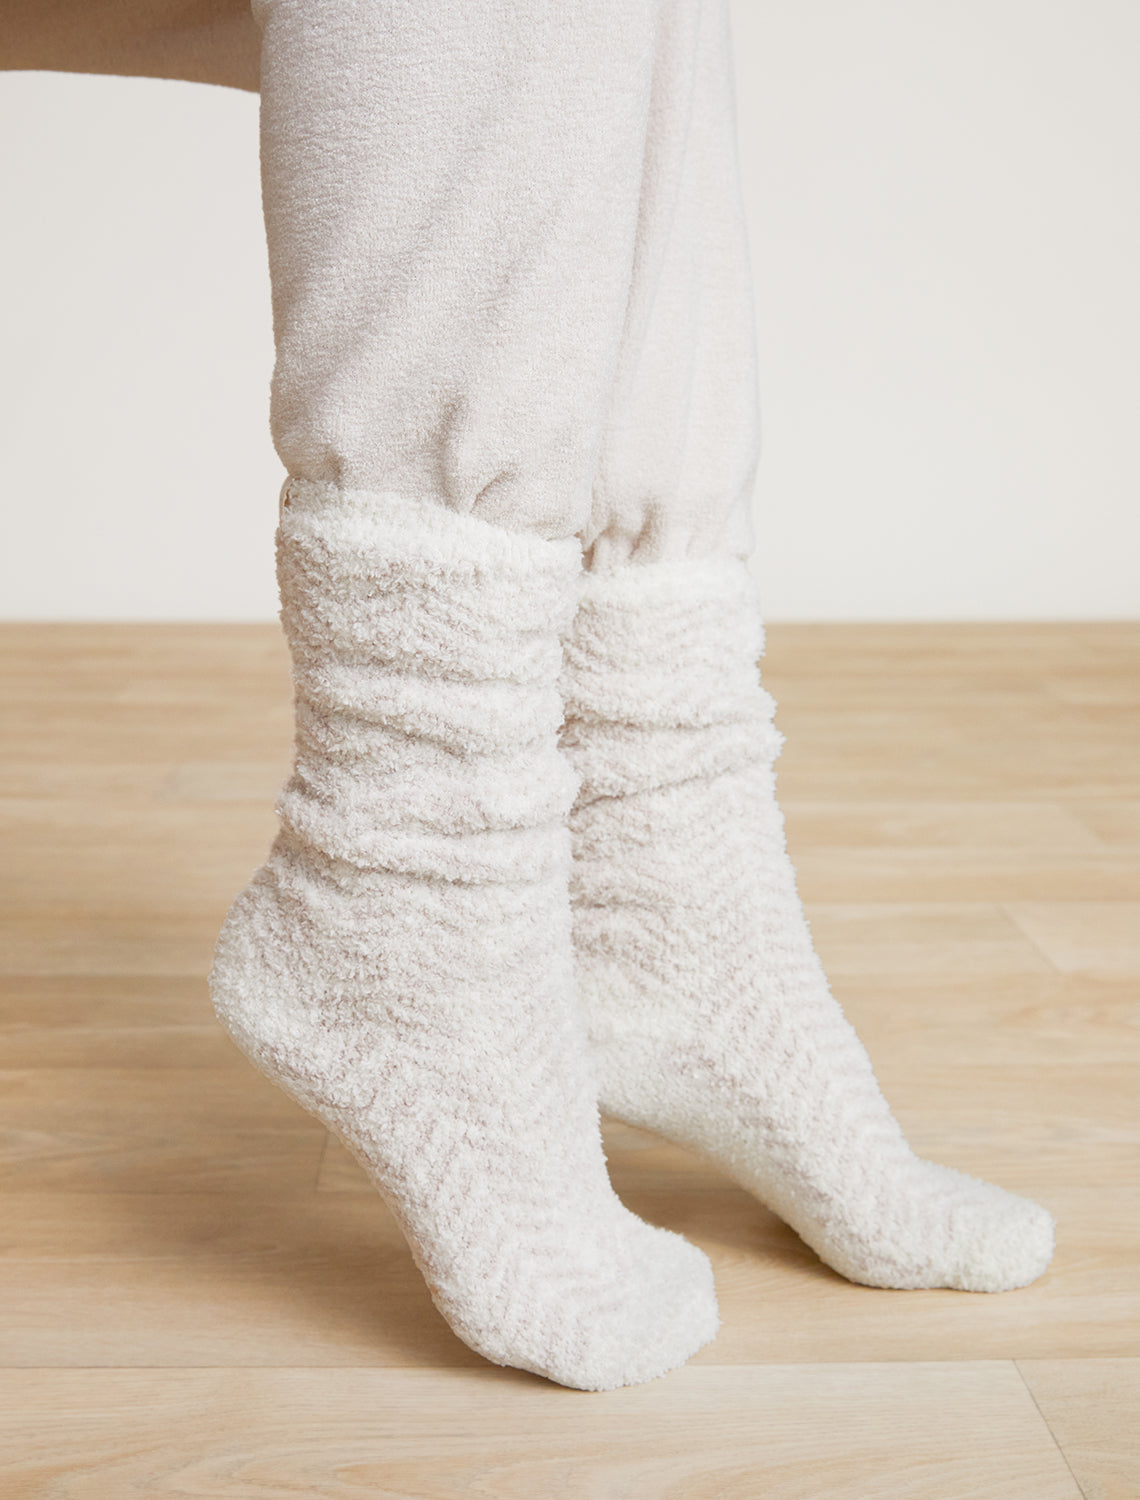  Barefoot Dream Socks